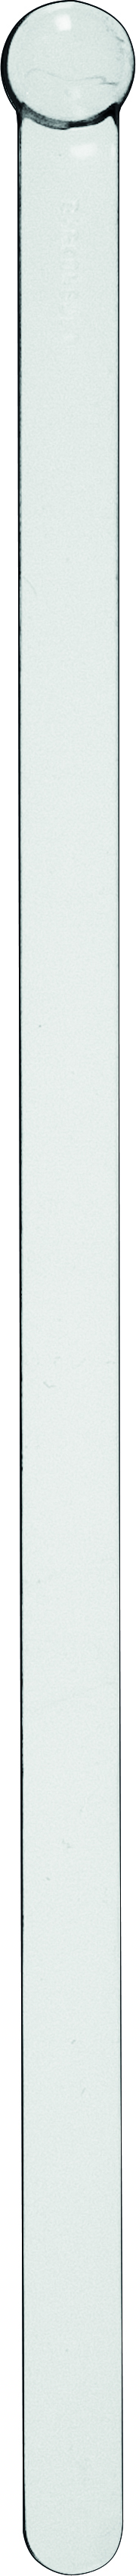 Cocktailrührer Kugel, transparent - 15,3cm (500Stk.)